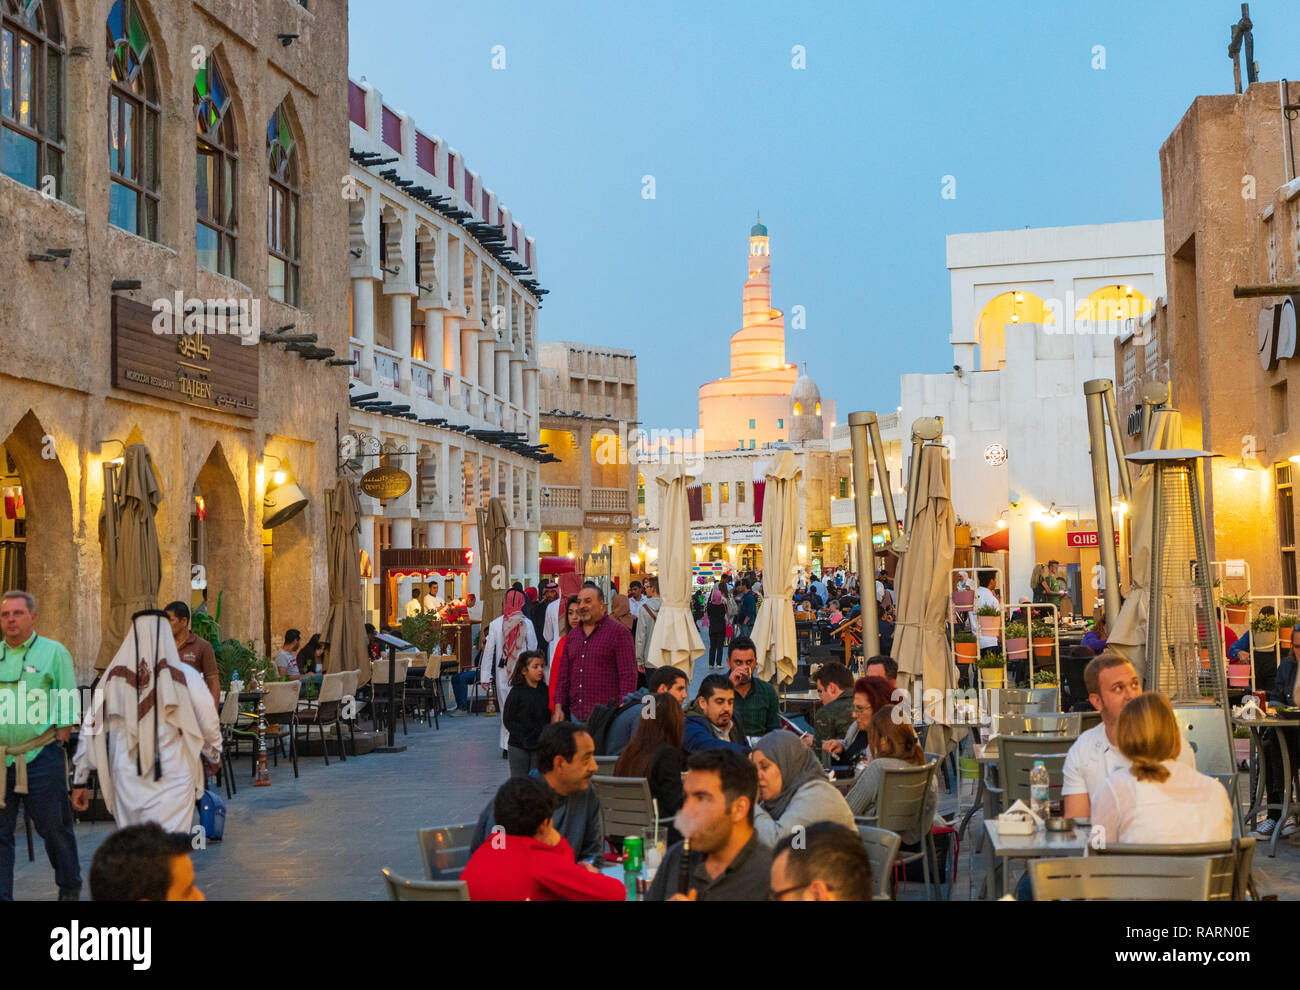 Vue sur la rue en soirée avec des gens occupés à Souq Waqif à Doha, Qatar Banque D'Images